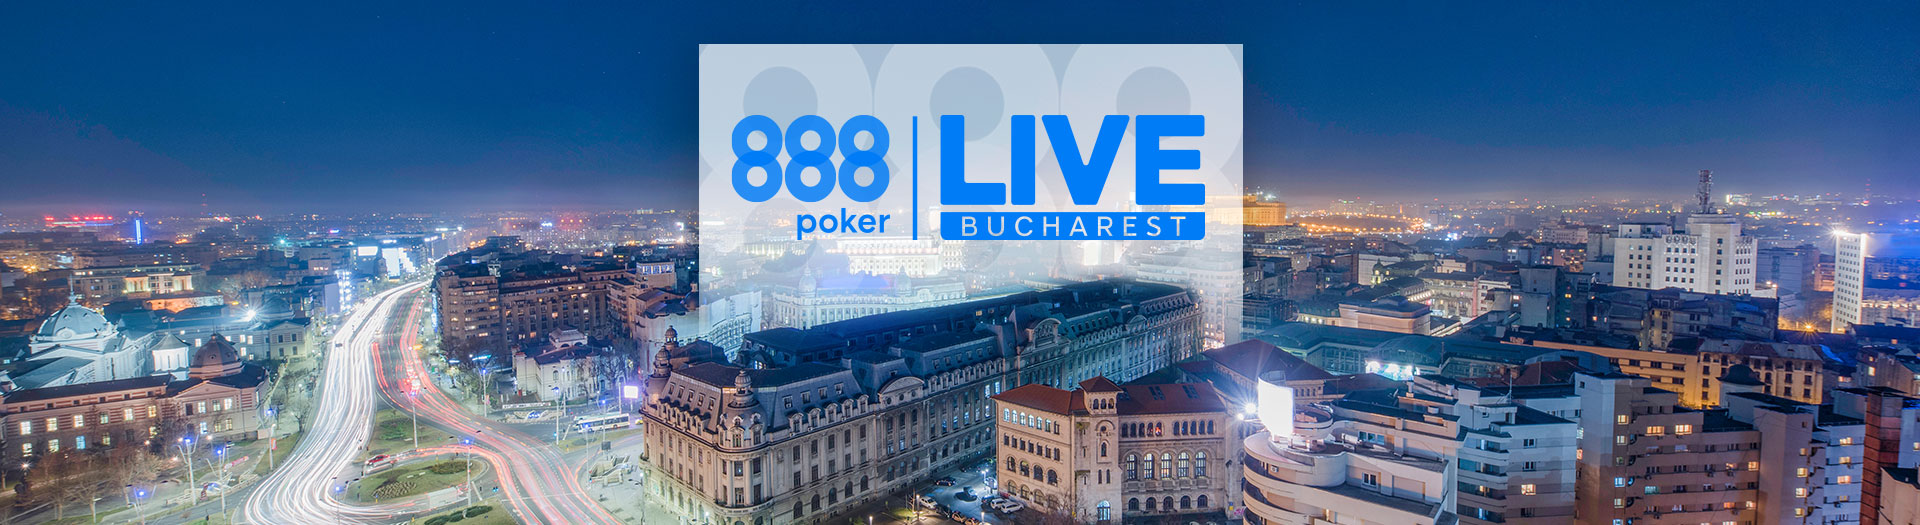 Live-Bucharest-LP-image-1686561106289_tcm1530-590031